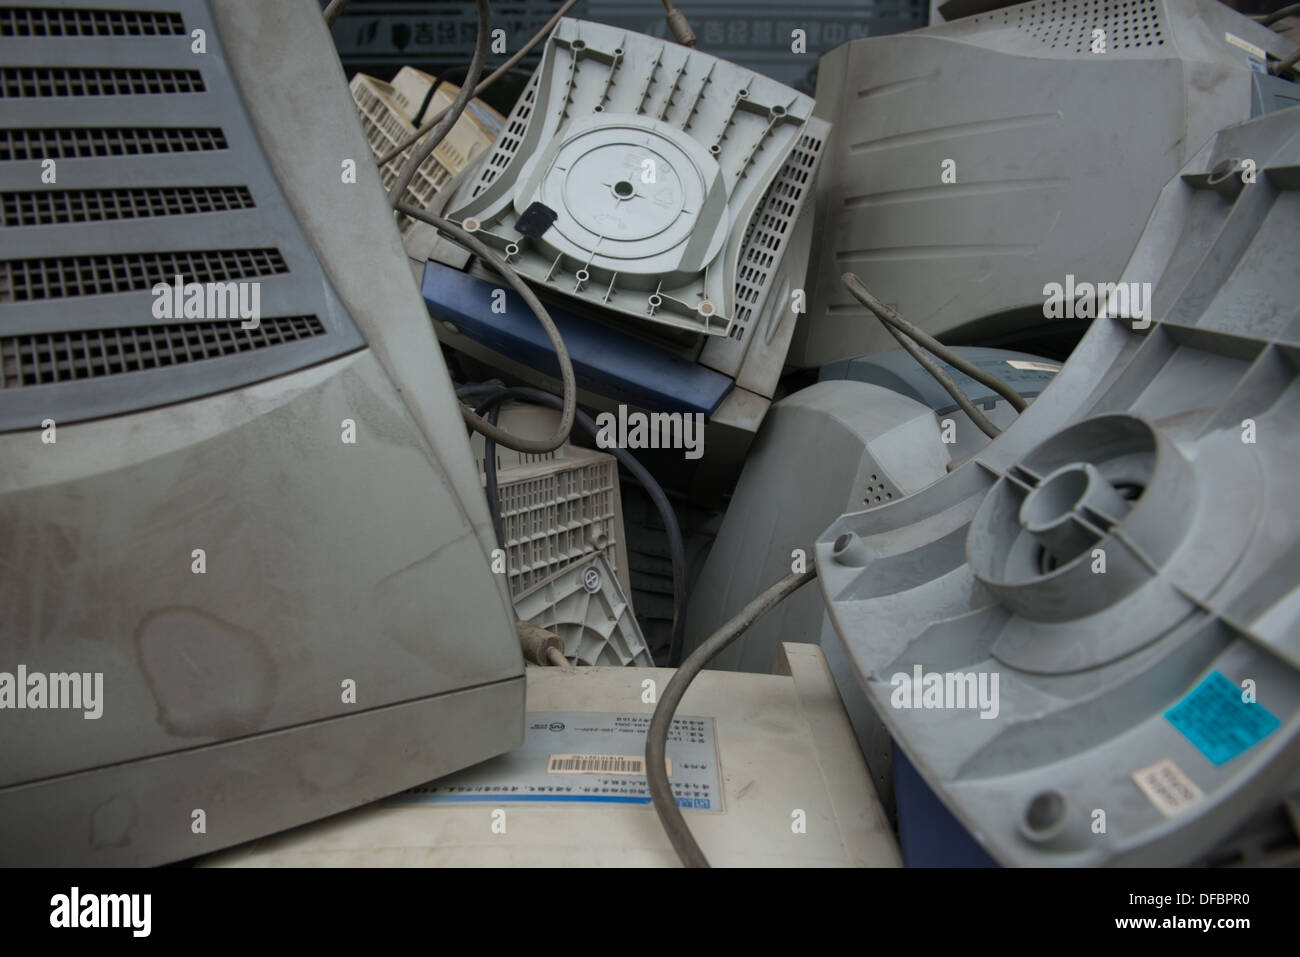 Taiyuan, Shanxi, China. A pile of computer monitors. Stock Photo